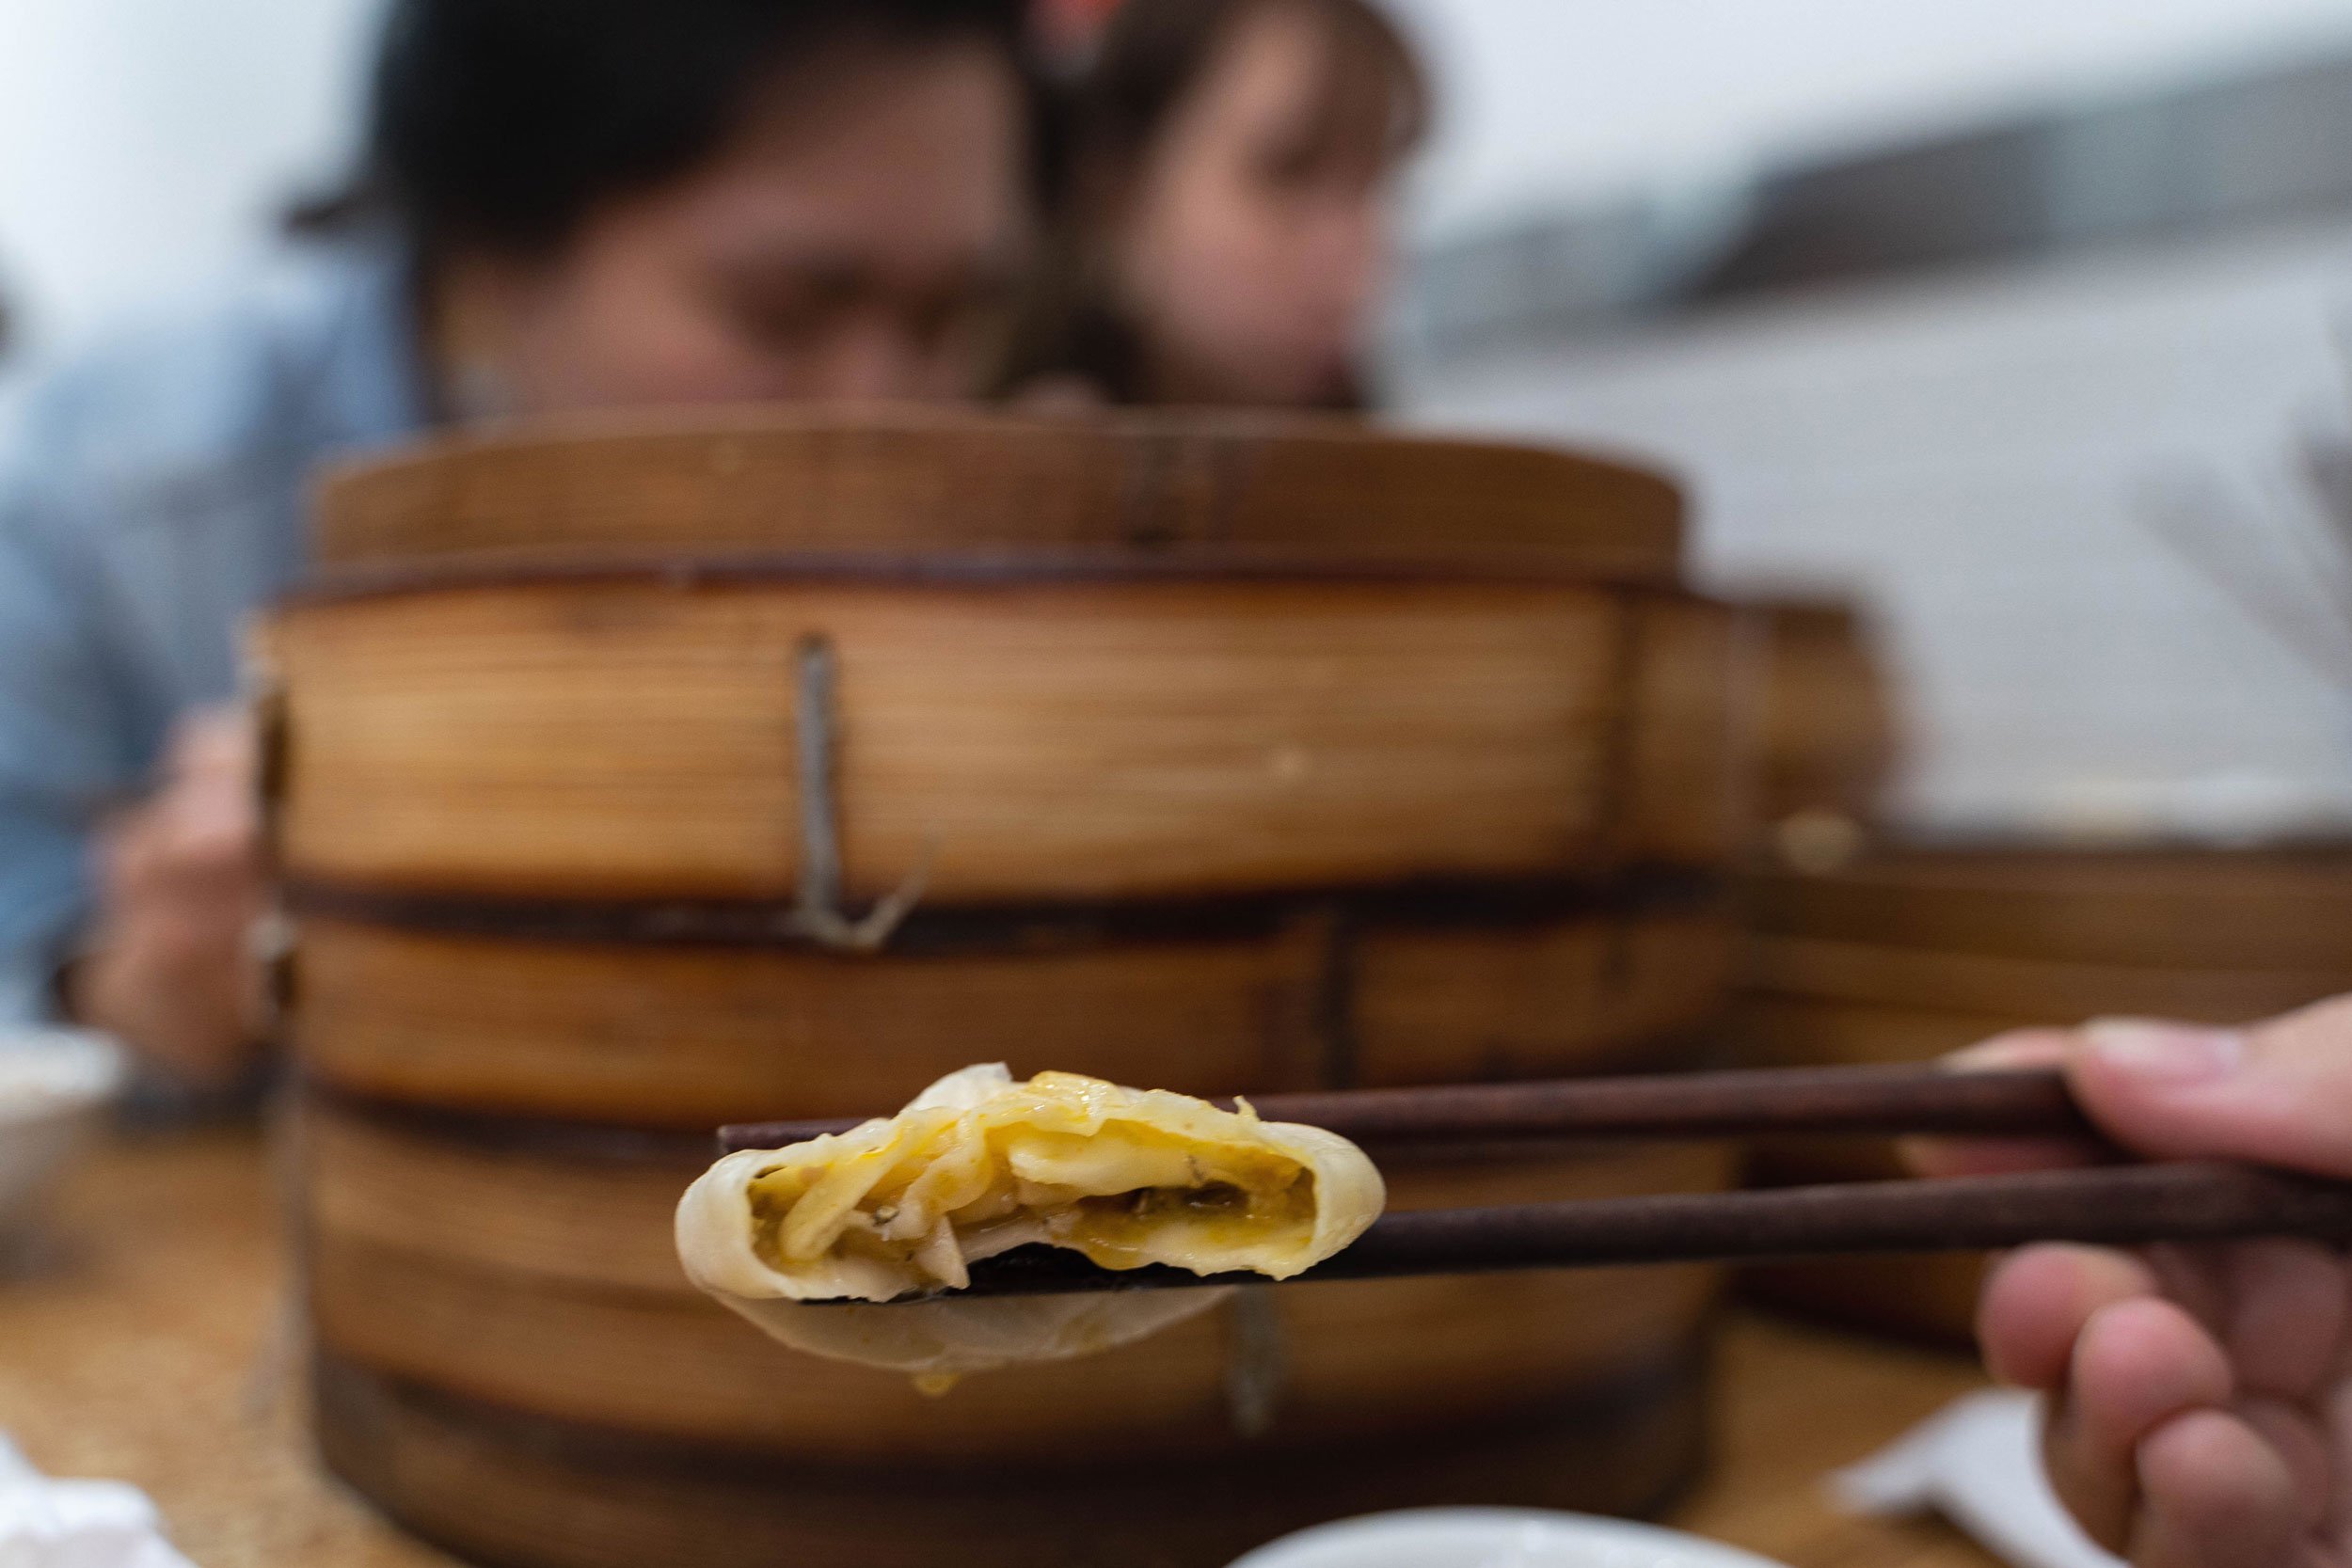 Inside the xiaolongbao (Shanghai soup dumplings) 